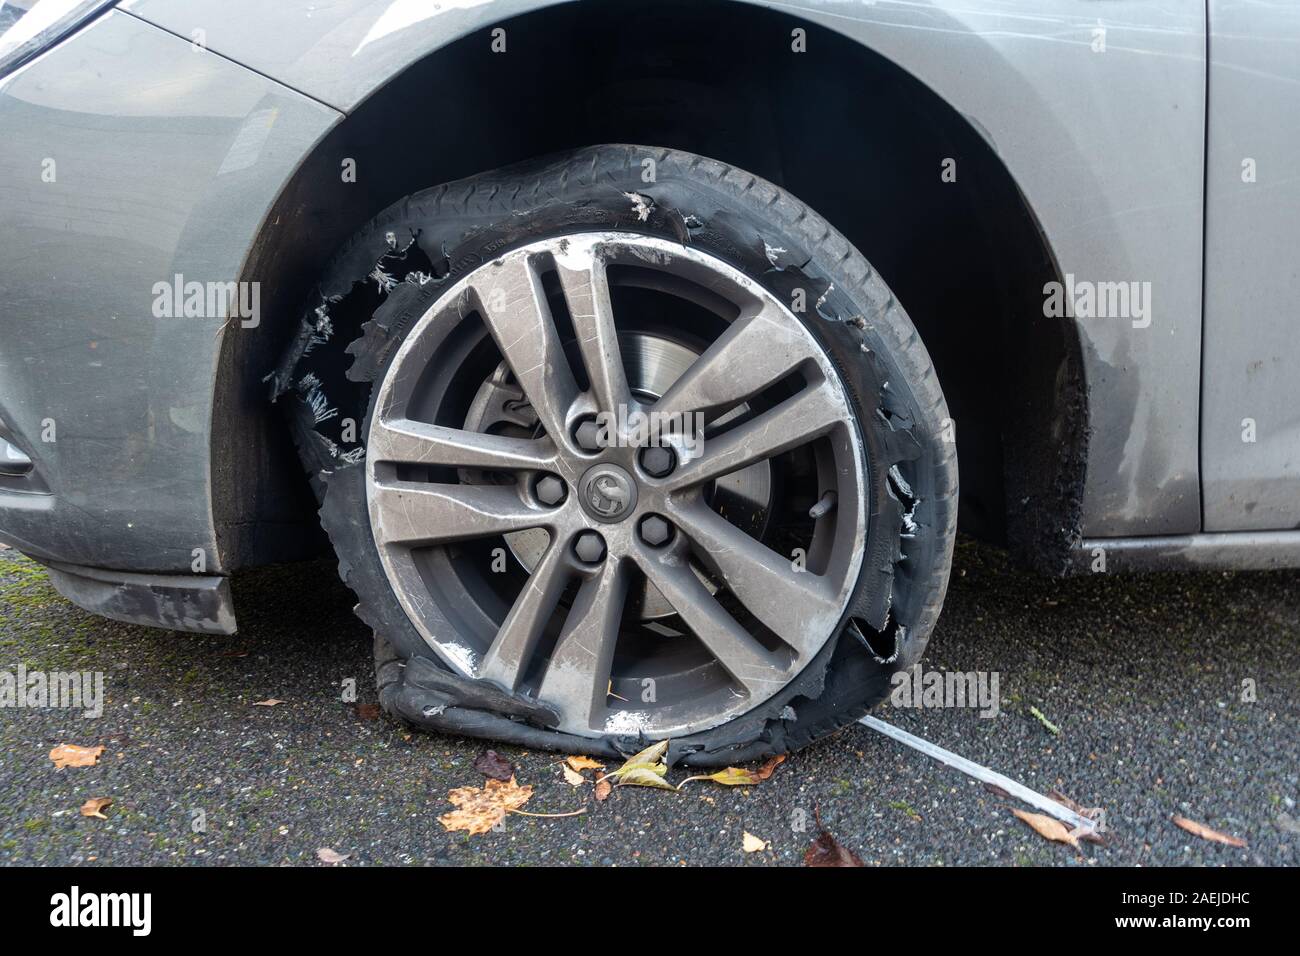 Wheel Punctured Tyre Banque d'image et photos - Alamy